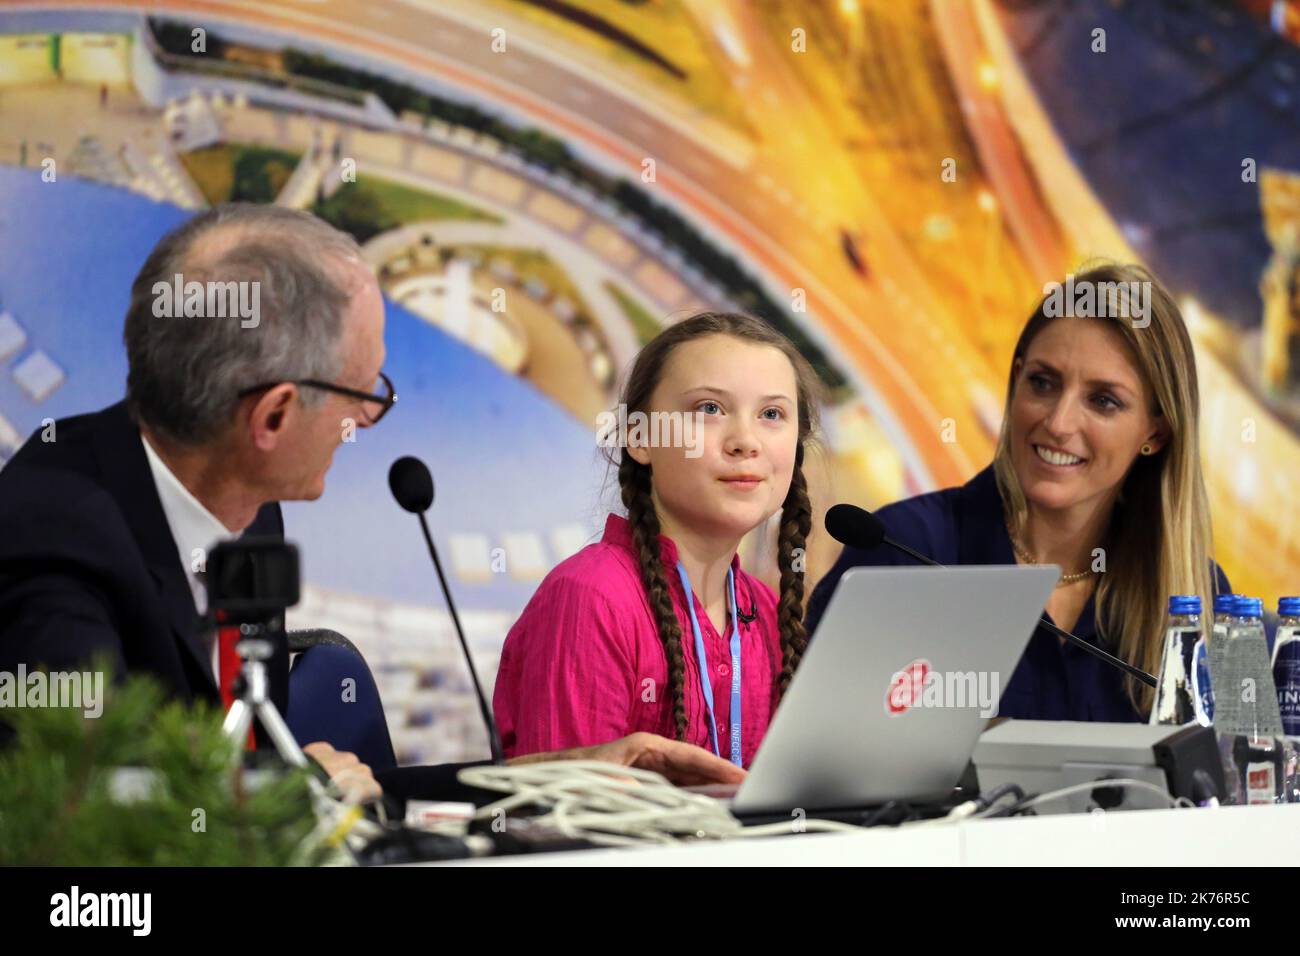 Die Pressekonferenz mit Greta Thunberg, 15 Jahre alter schwedischer Aktivistin, fand am 3. Dezember im Rahmen der UN-Klimakonferenz in Katowice statt Stockfoto